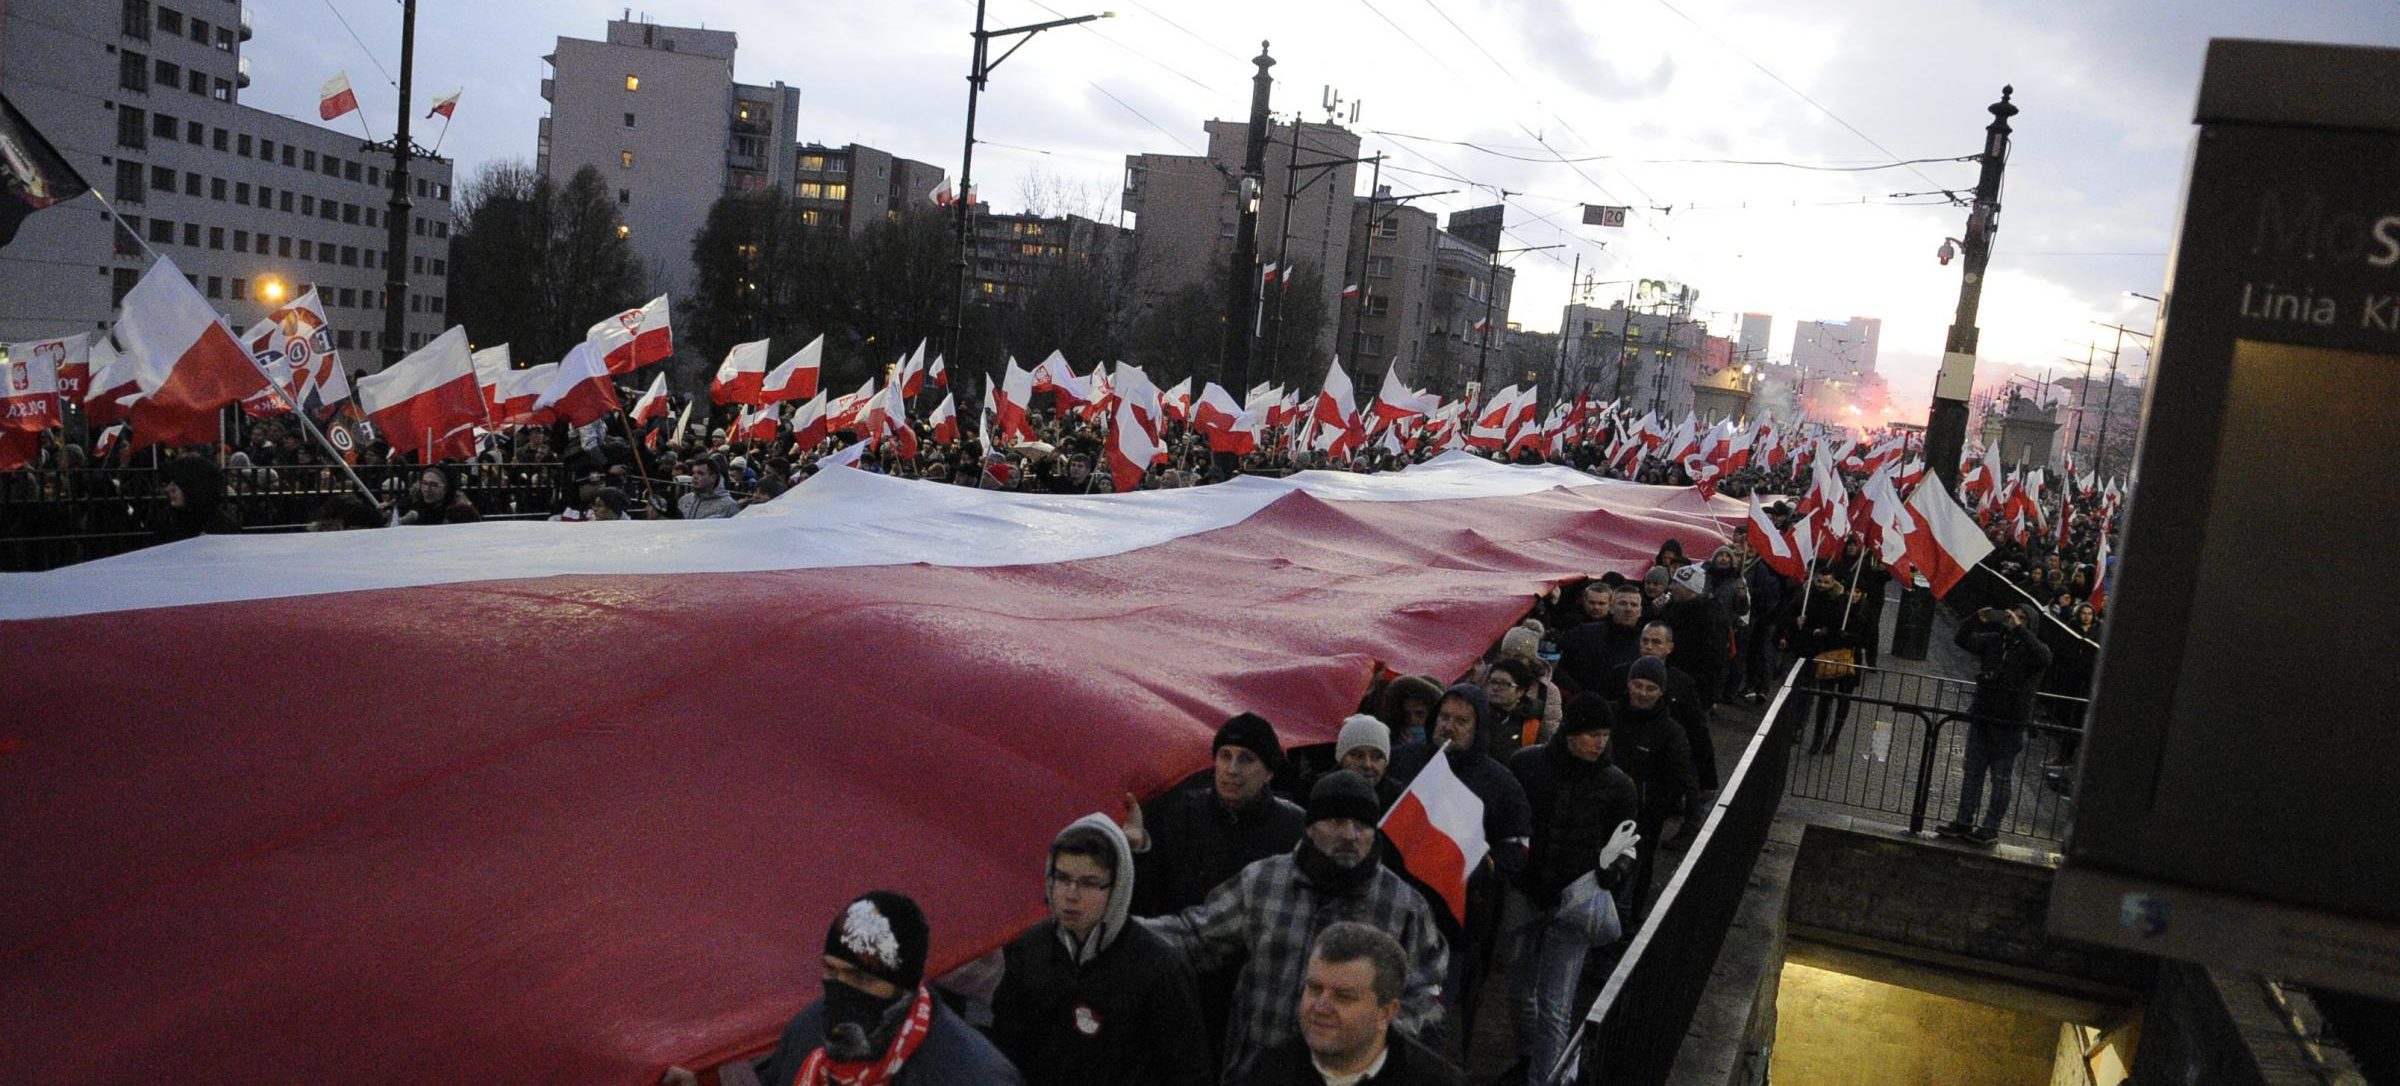 Polonia, marcia a Varsavia